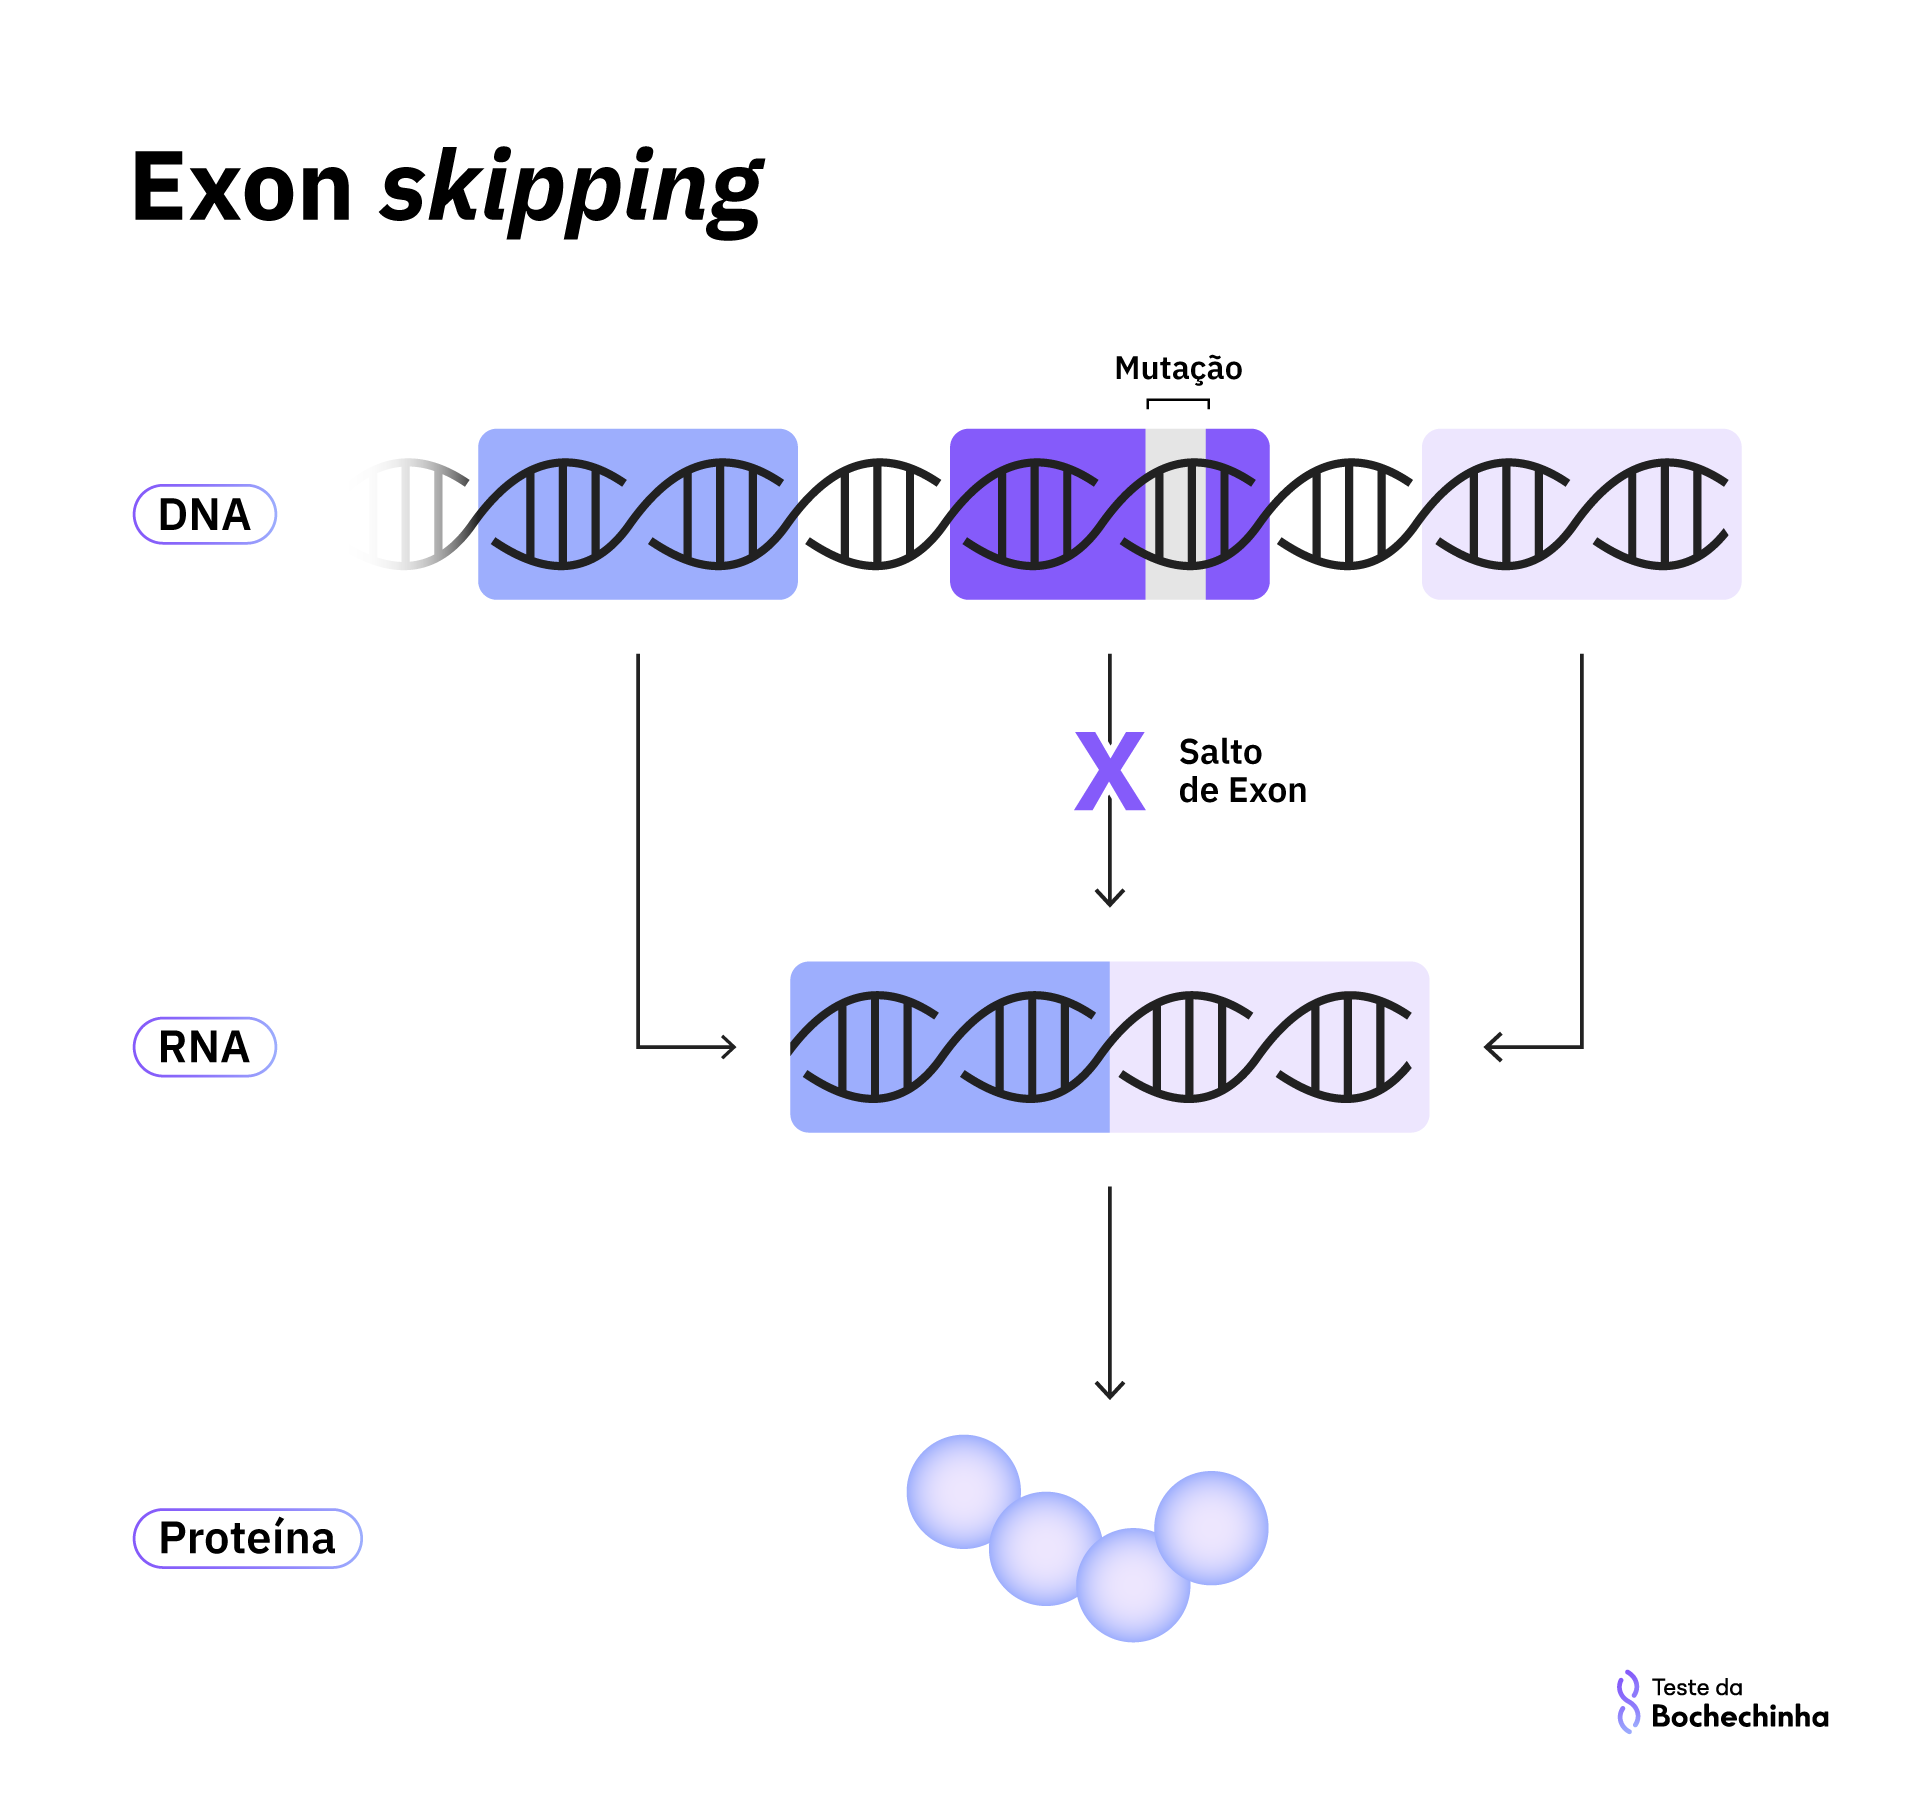 ilustração de como funciona o exon skipping, em que o éxon com mutação não é utilizado para a transcrição em RNA e a proteína traduzida é parcialmente funcional